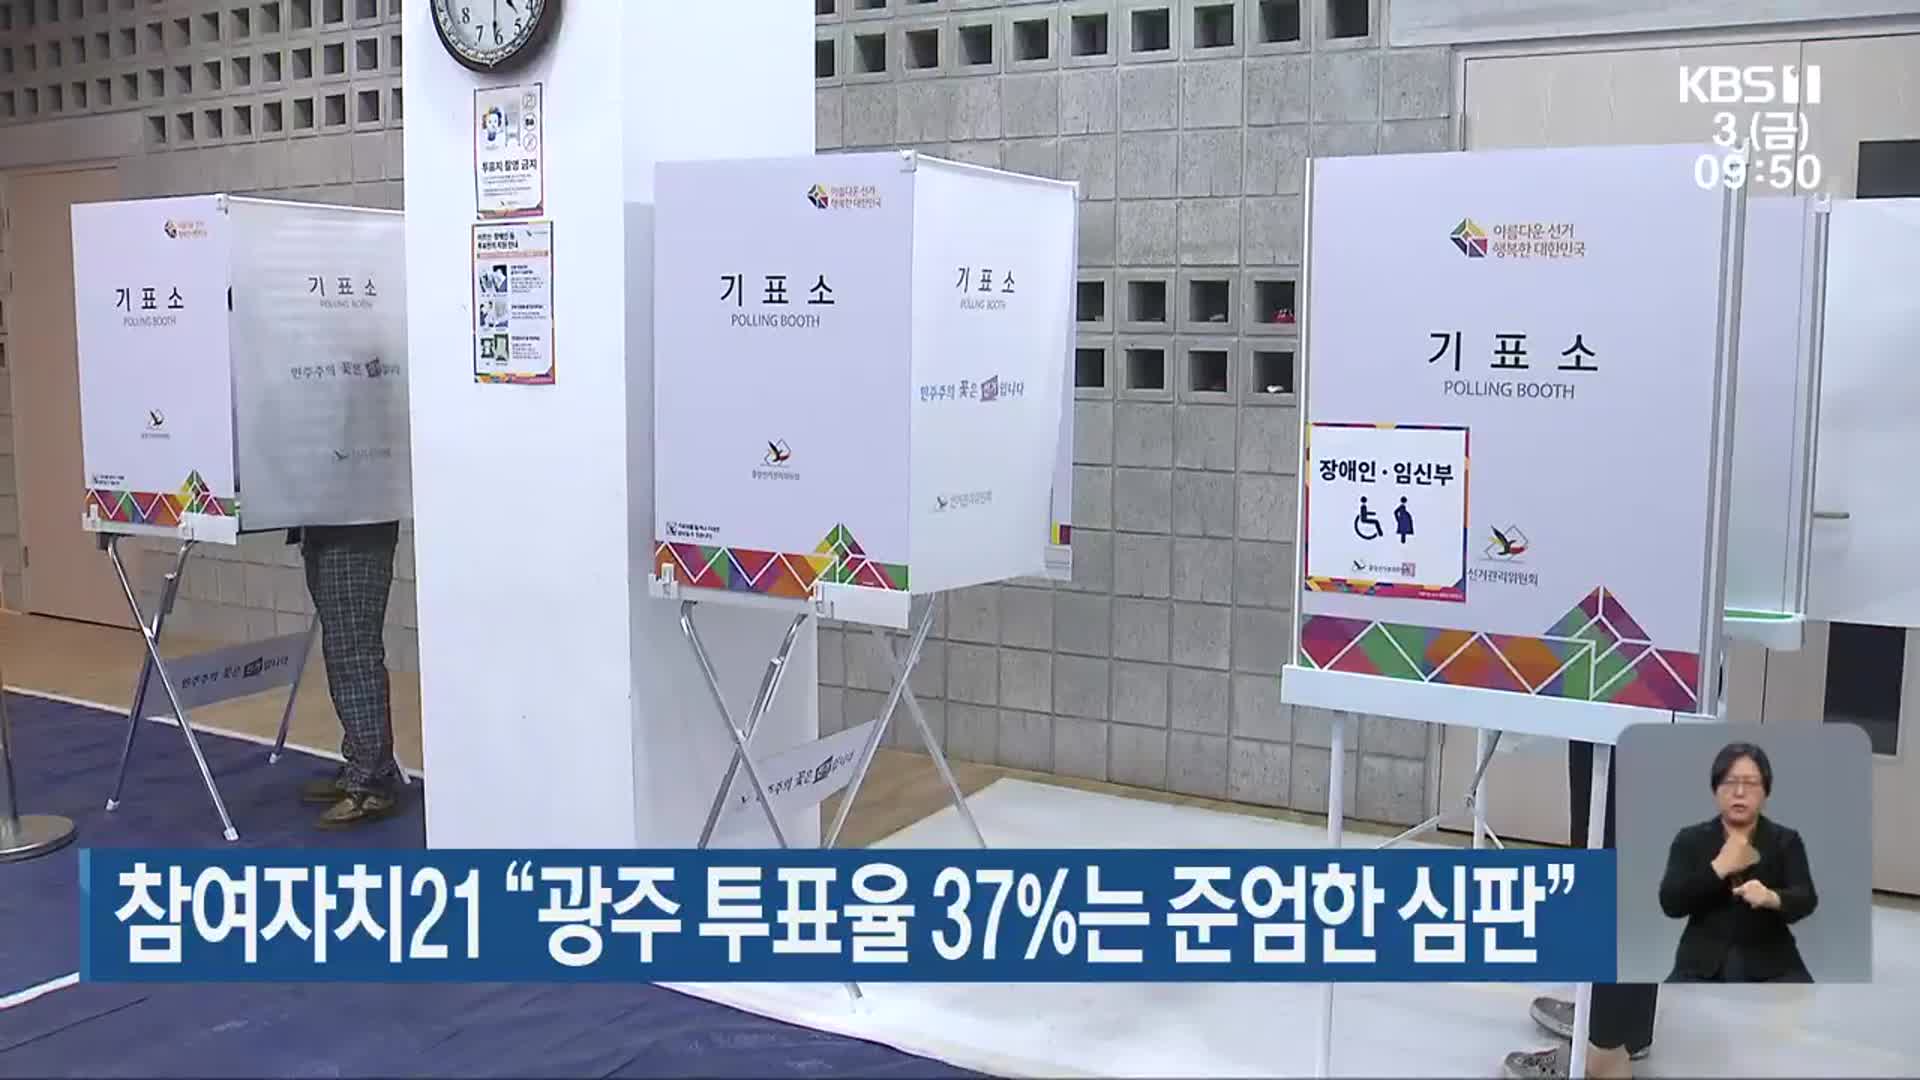 참여자치21 “광주 투표율 37%는 준엄한 심판”